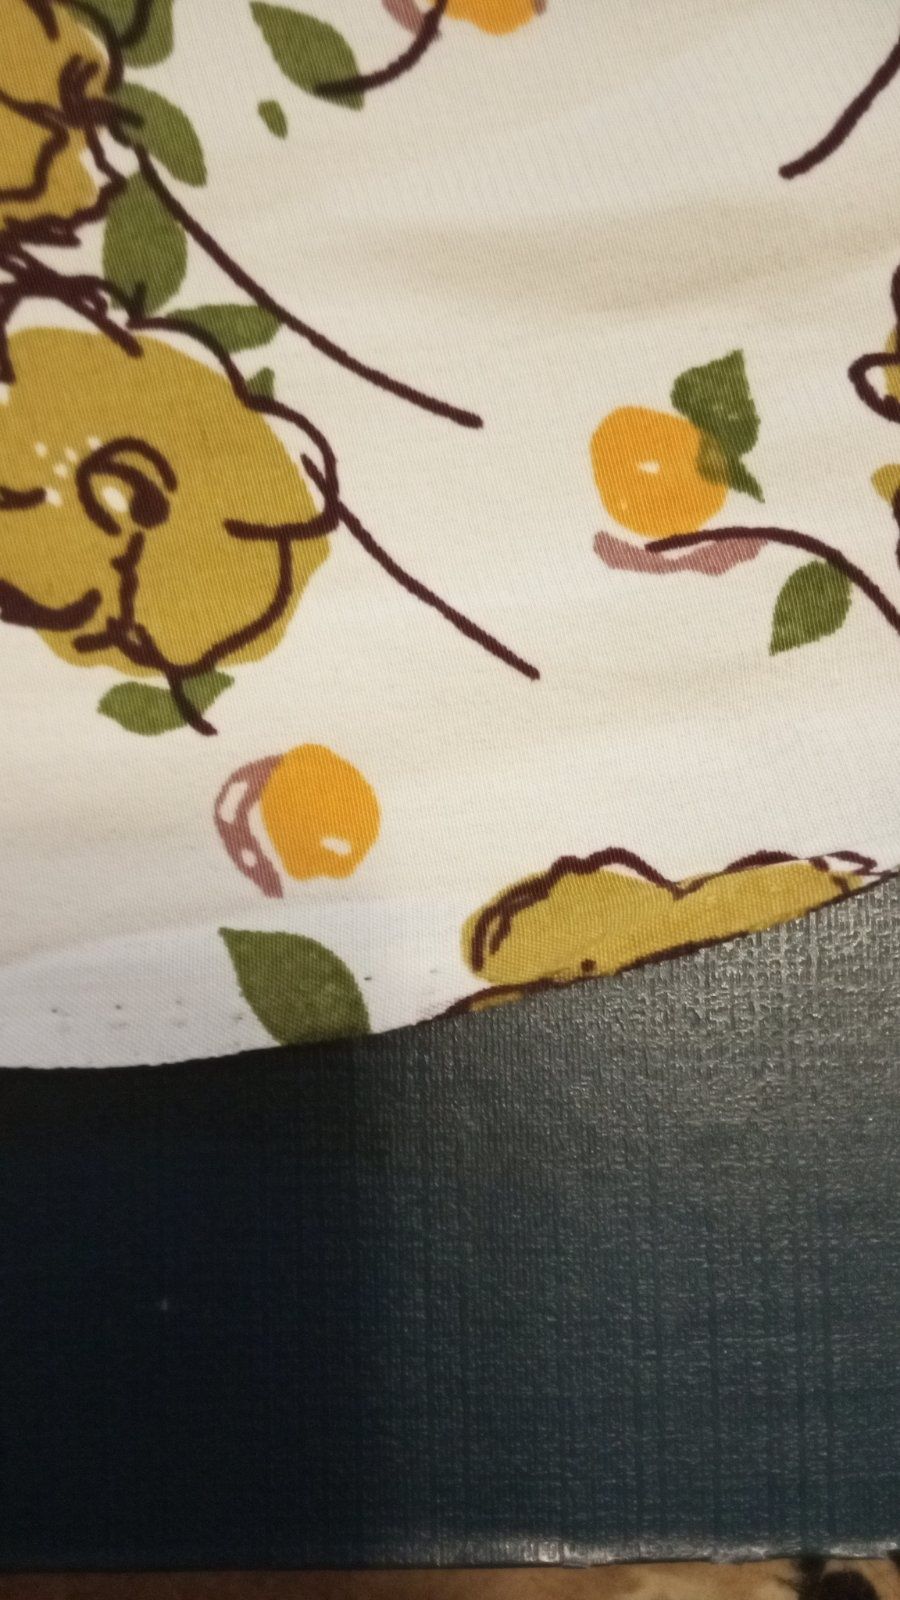 Отрезок ткани Ткань оливка цветок 0,96 х 2,44 м.